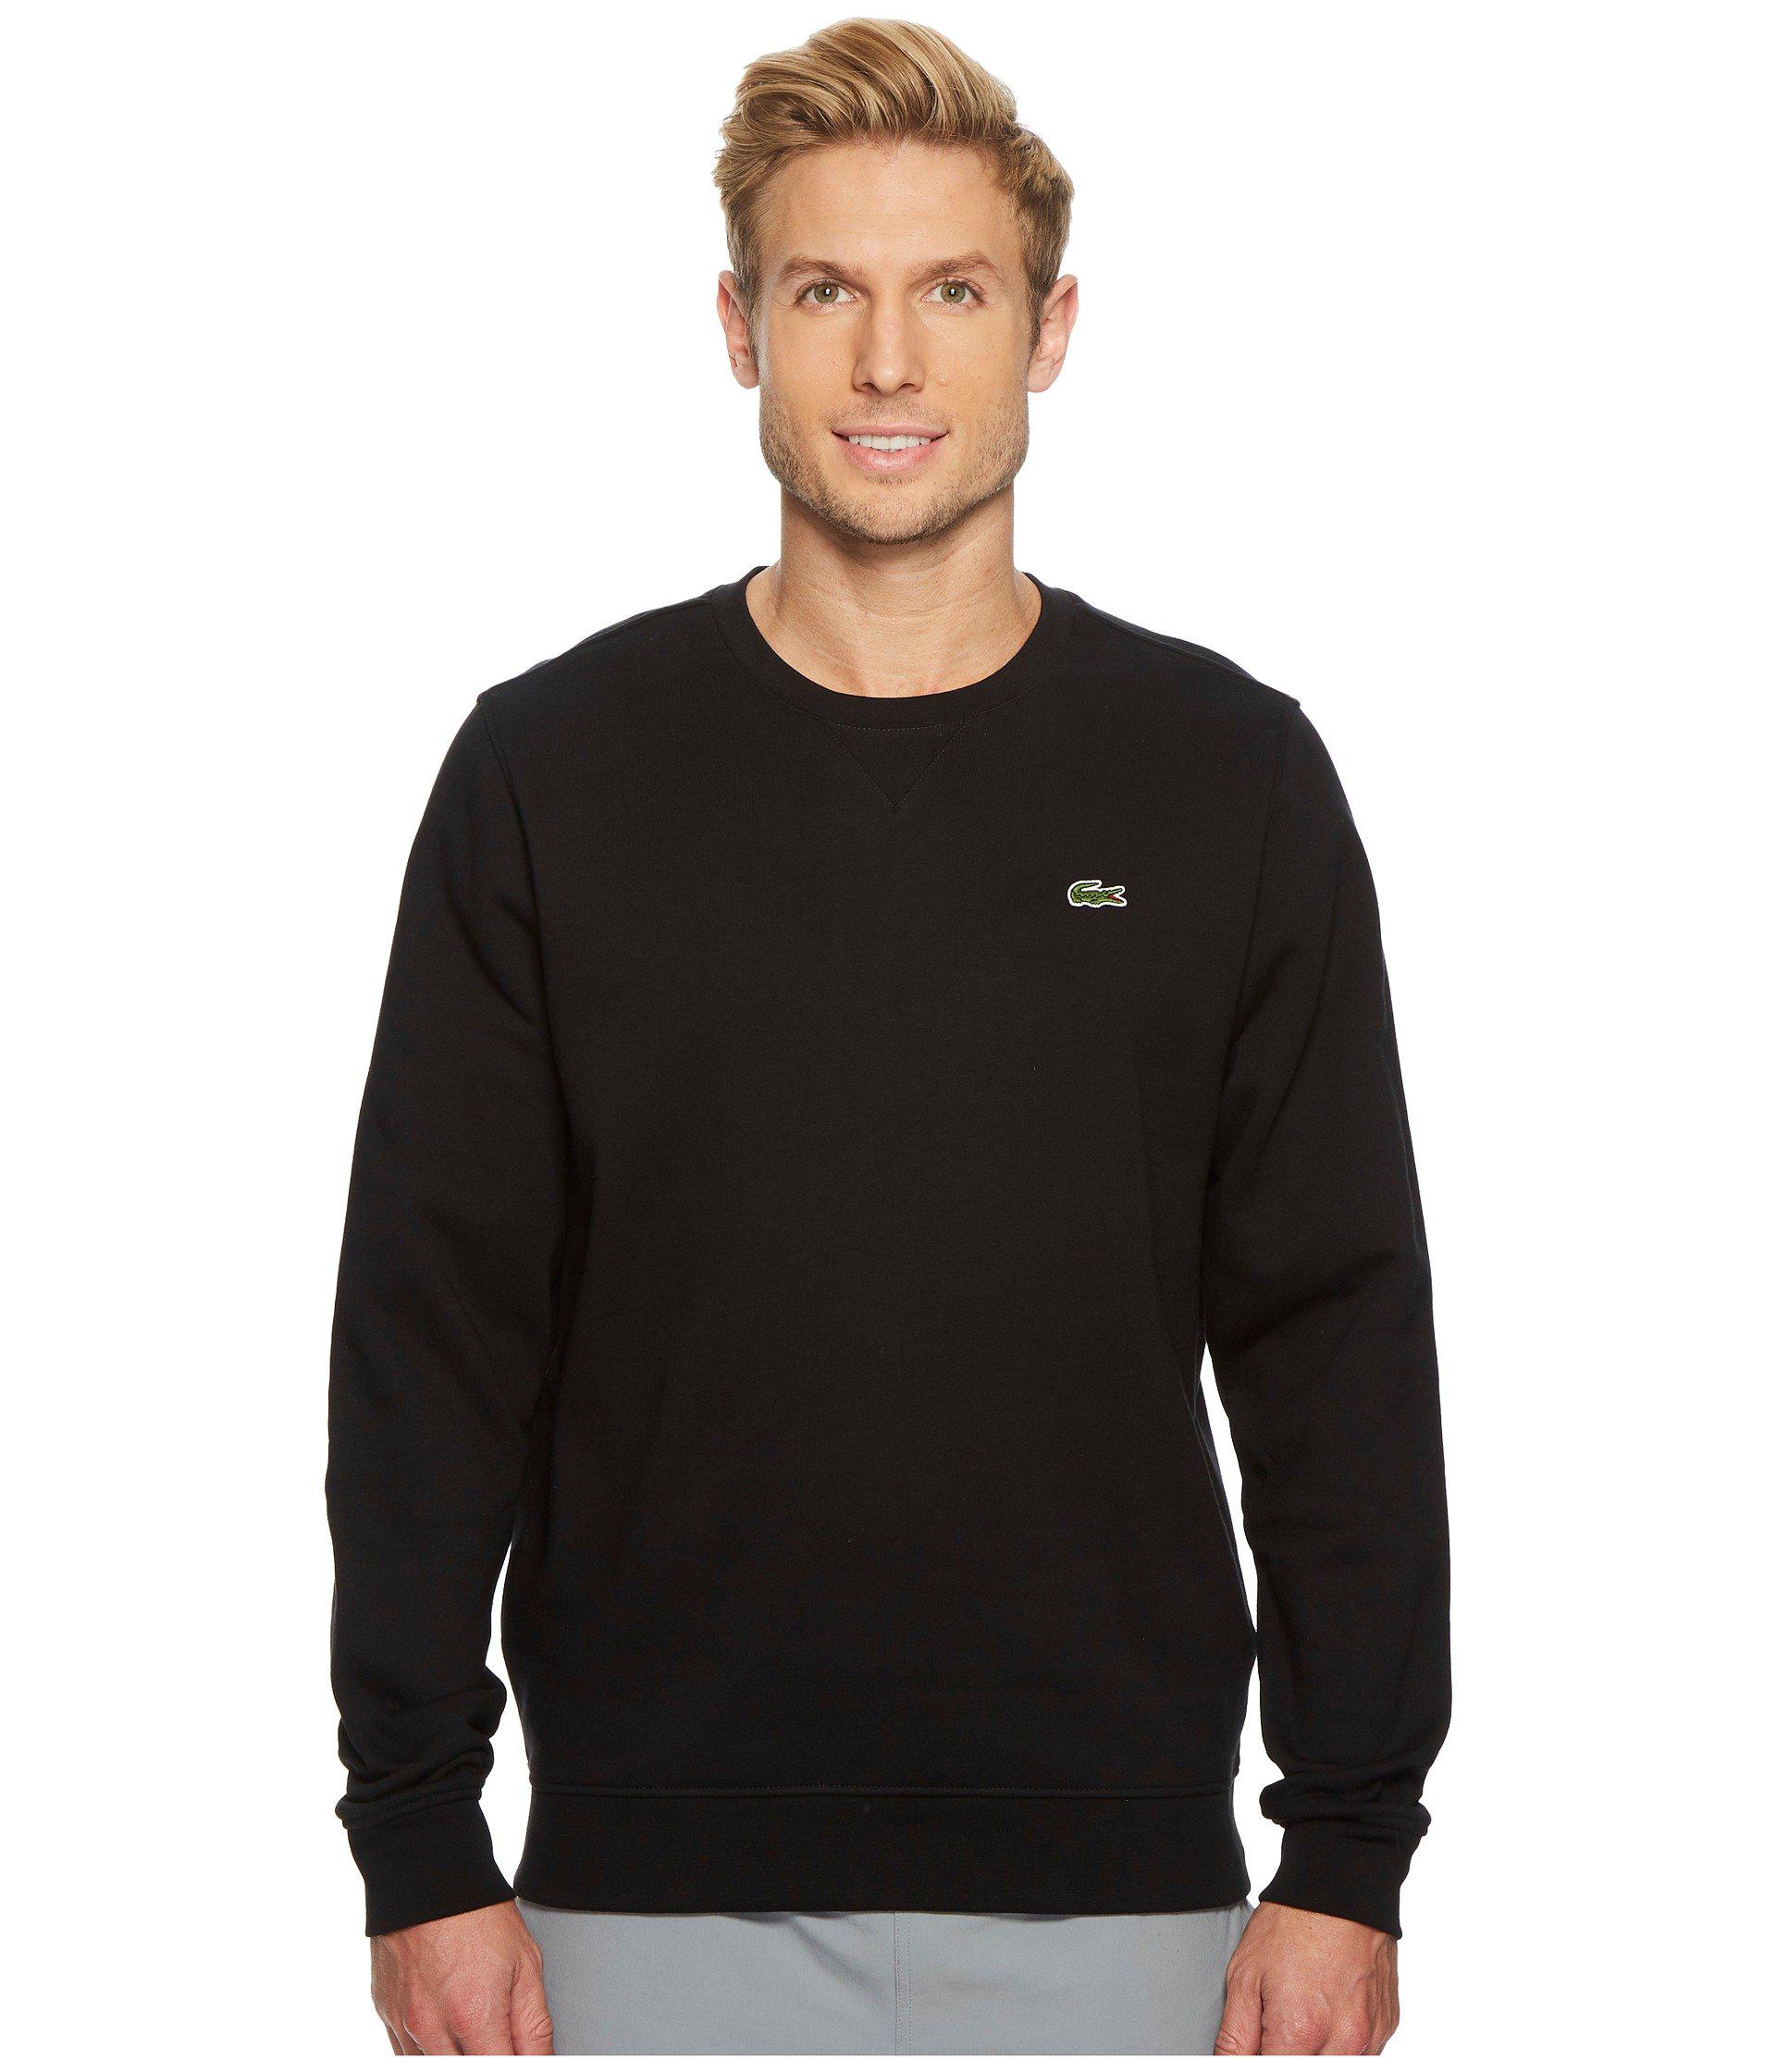 Lacoste Sport Crew Neck Fleece Sweatshirt in Black for Men - Lyst